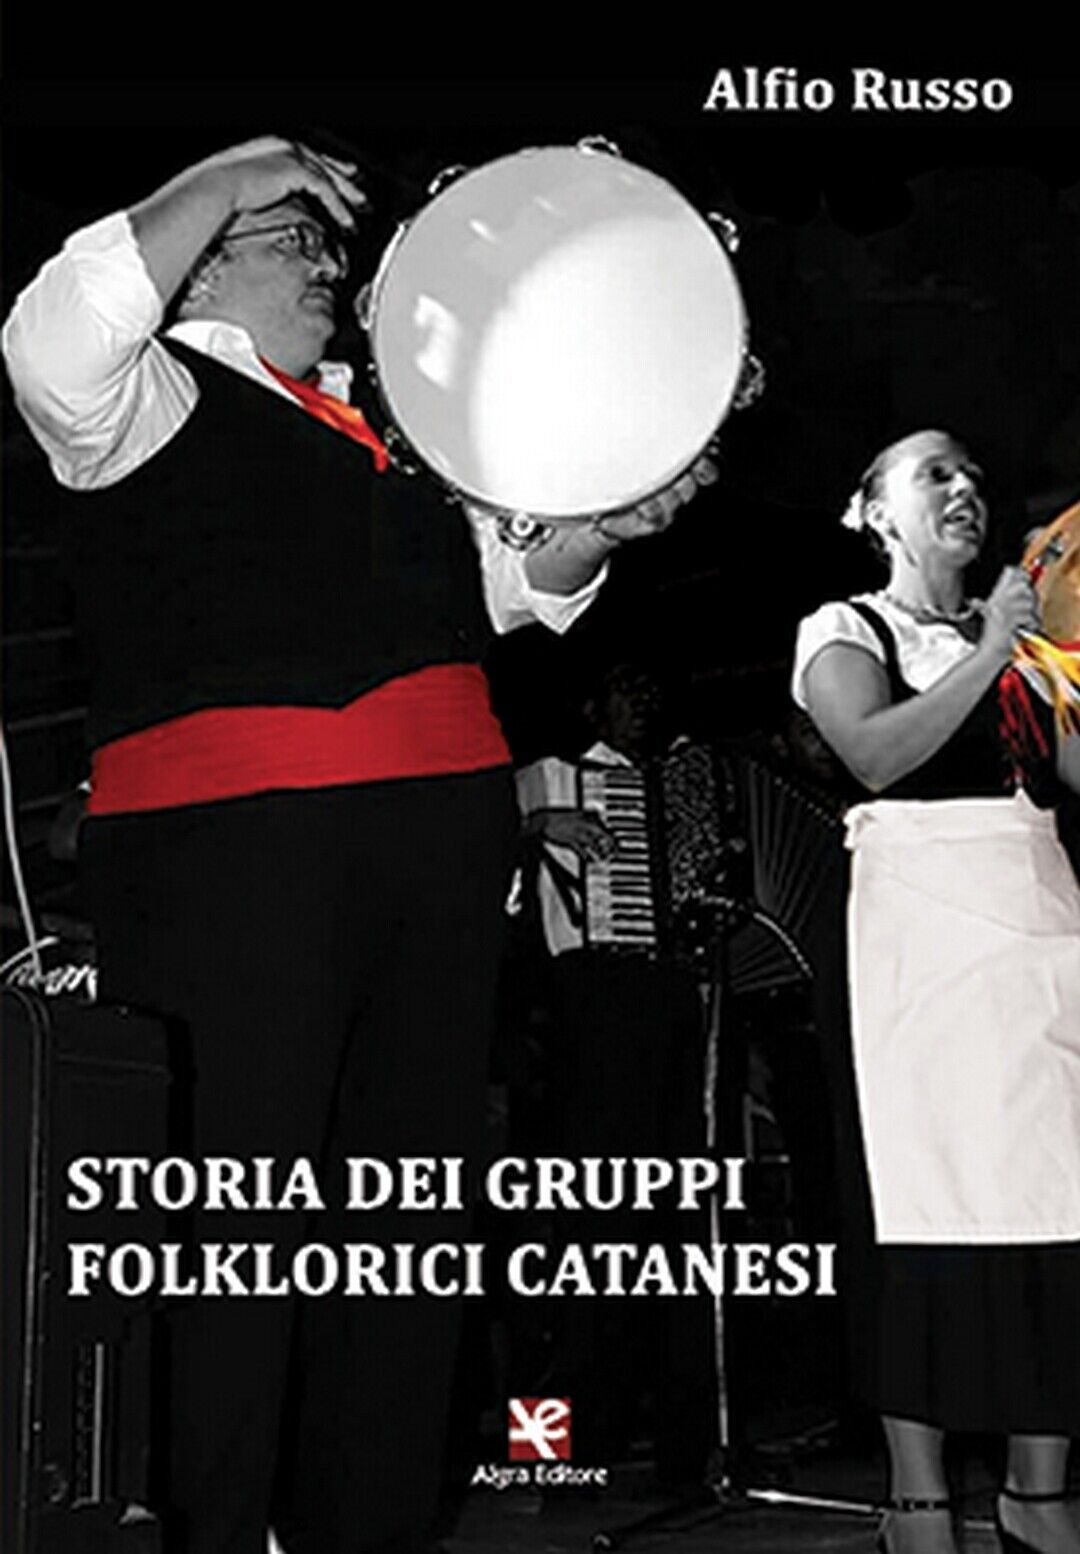 Storia dei gruppi folklorici catanesi  di Alfio Russo,  Algra Editore